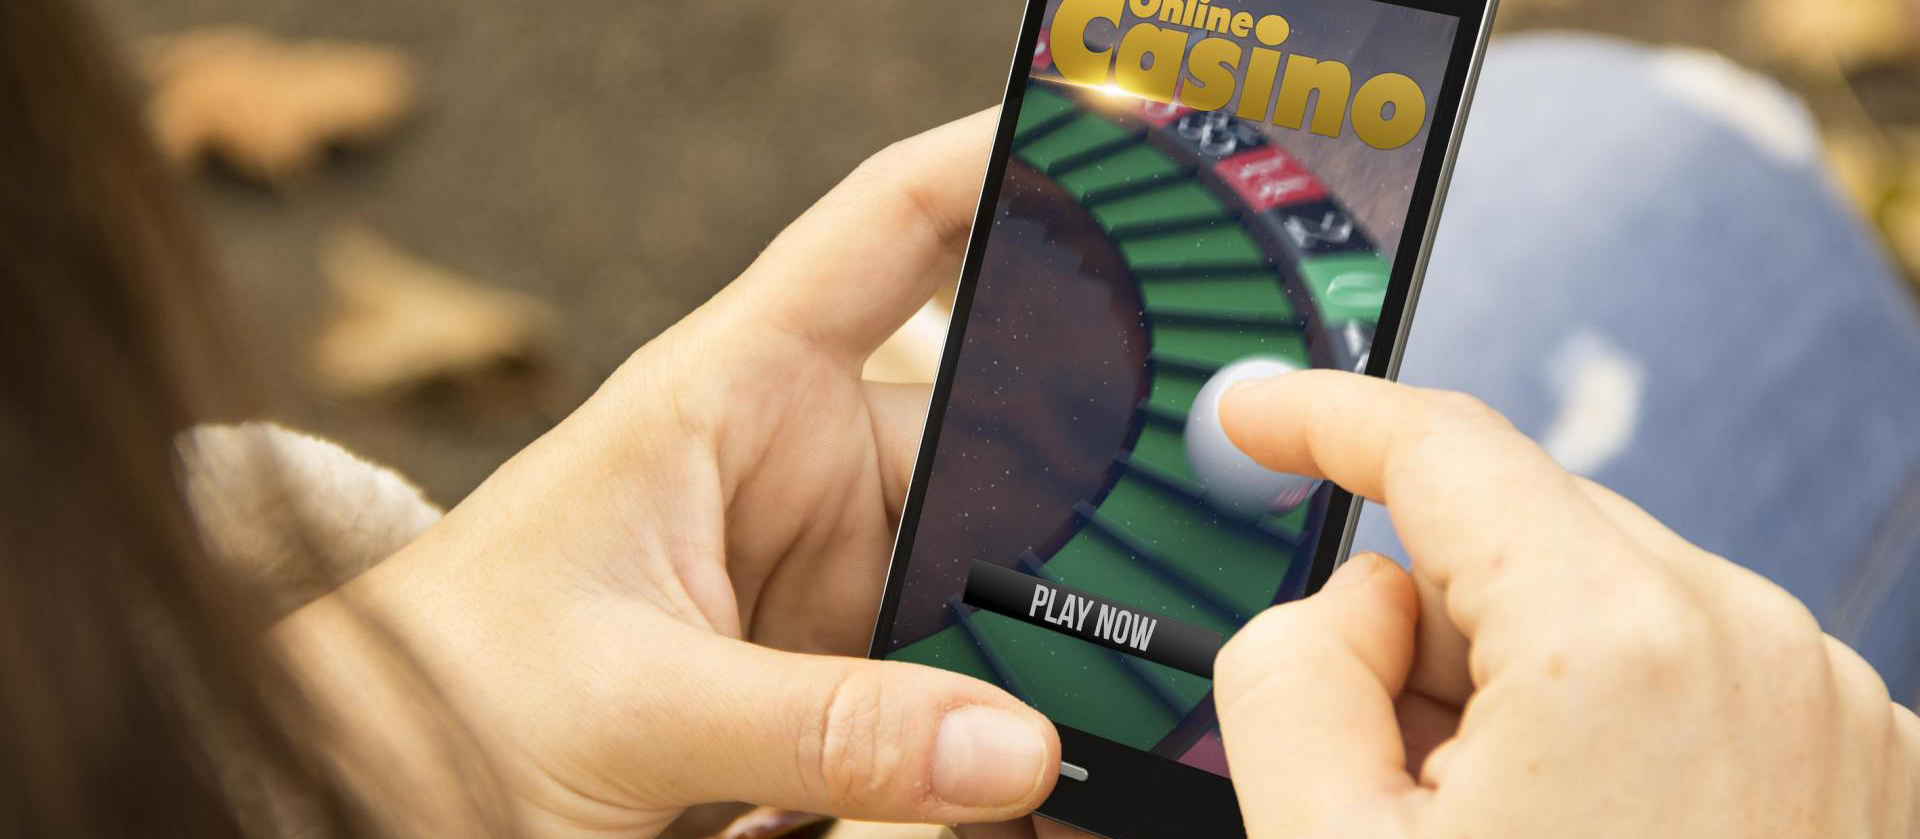 Mobilne kasyno w Polsce online